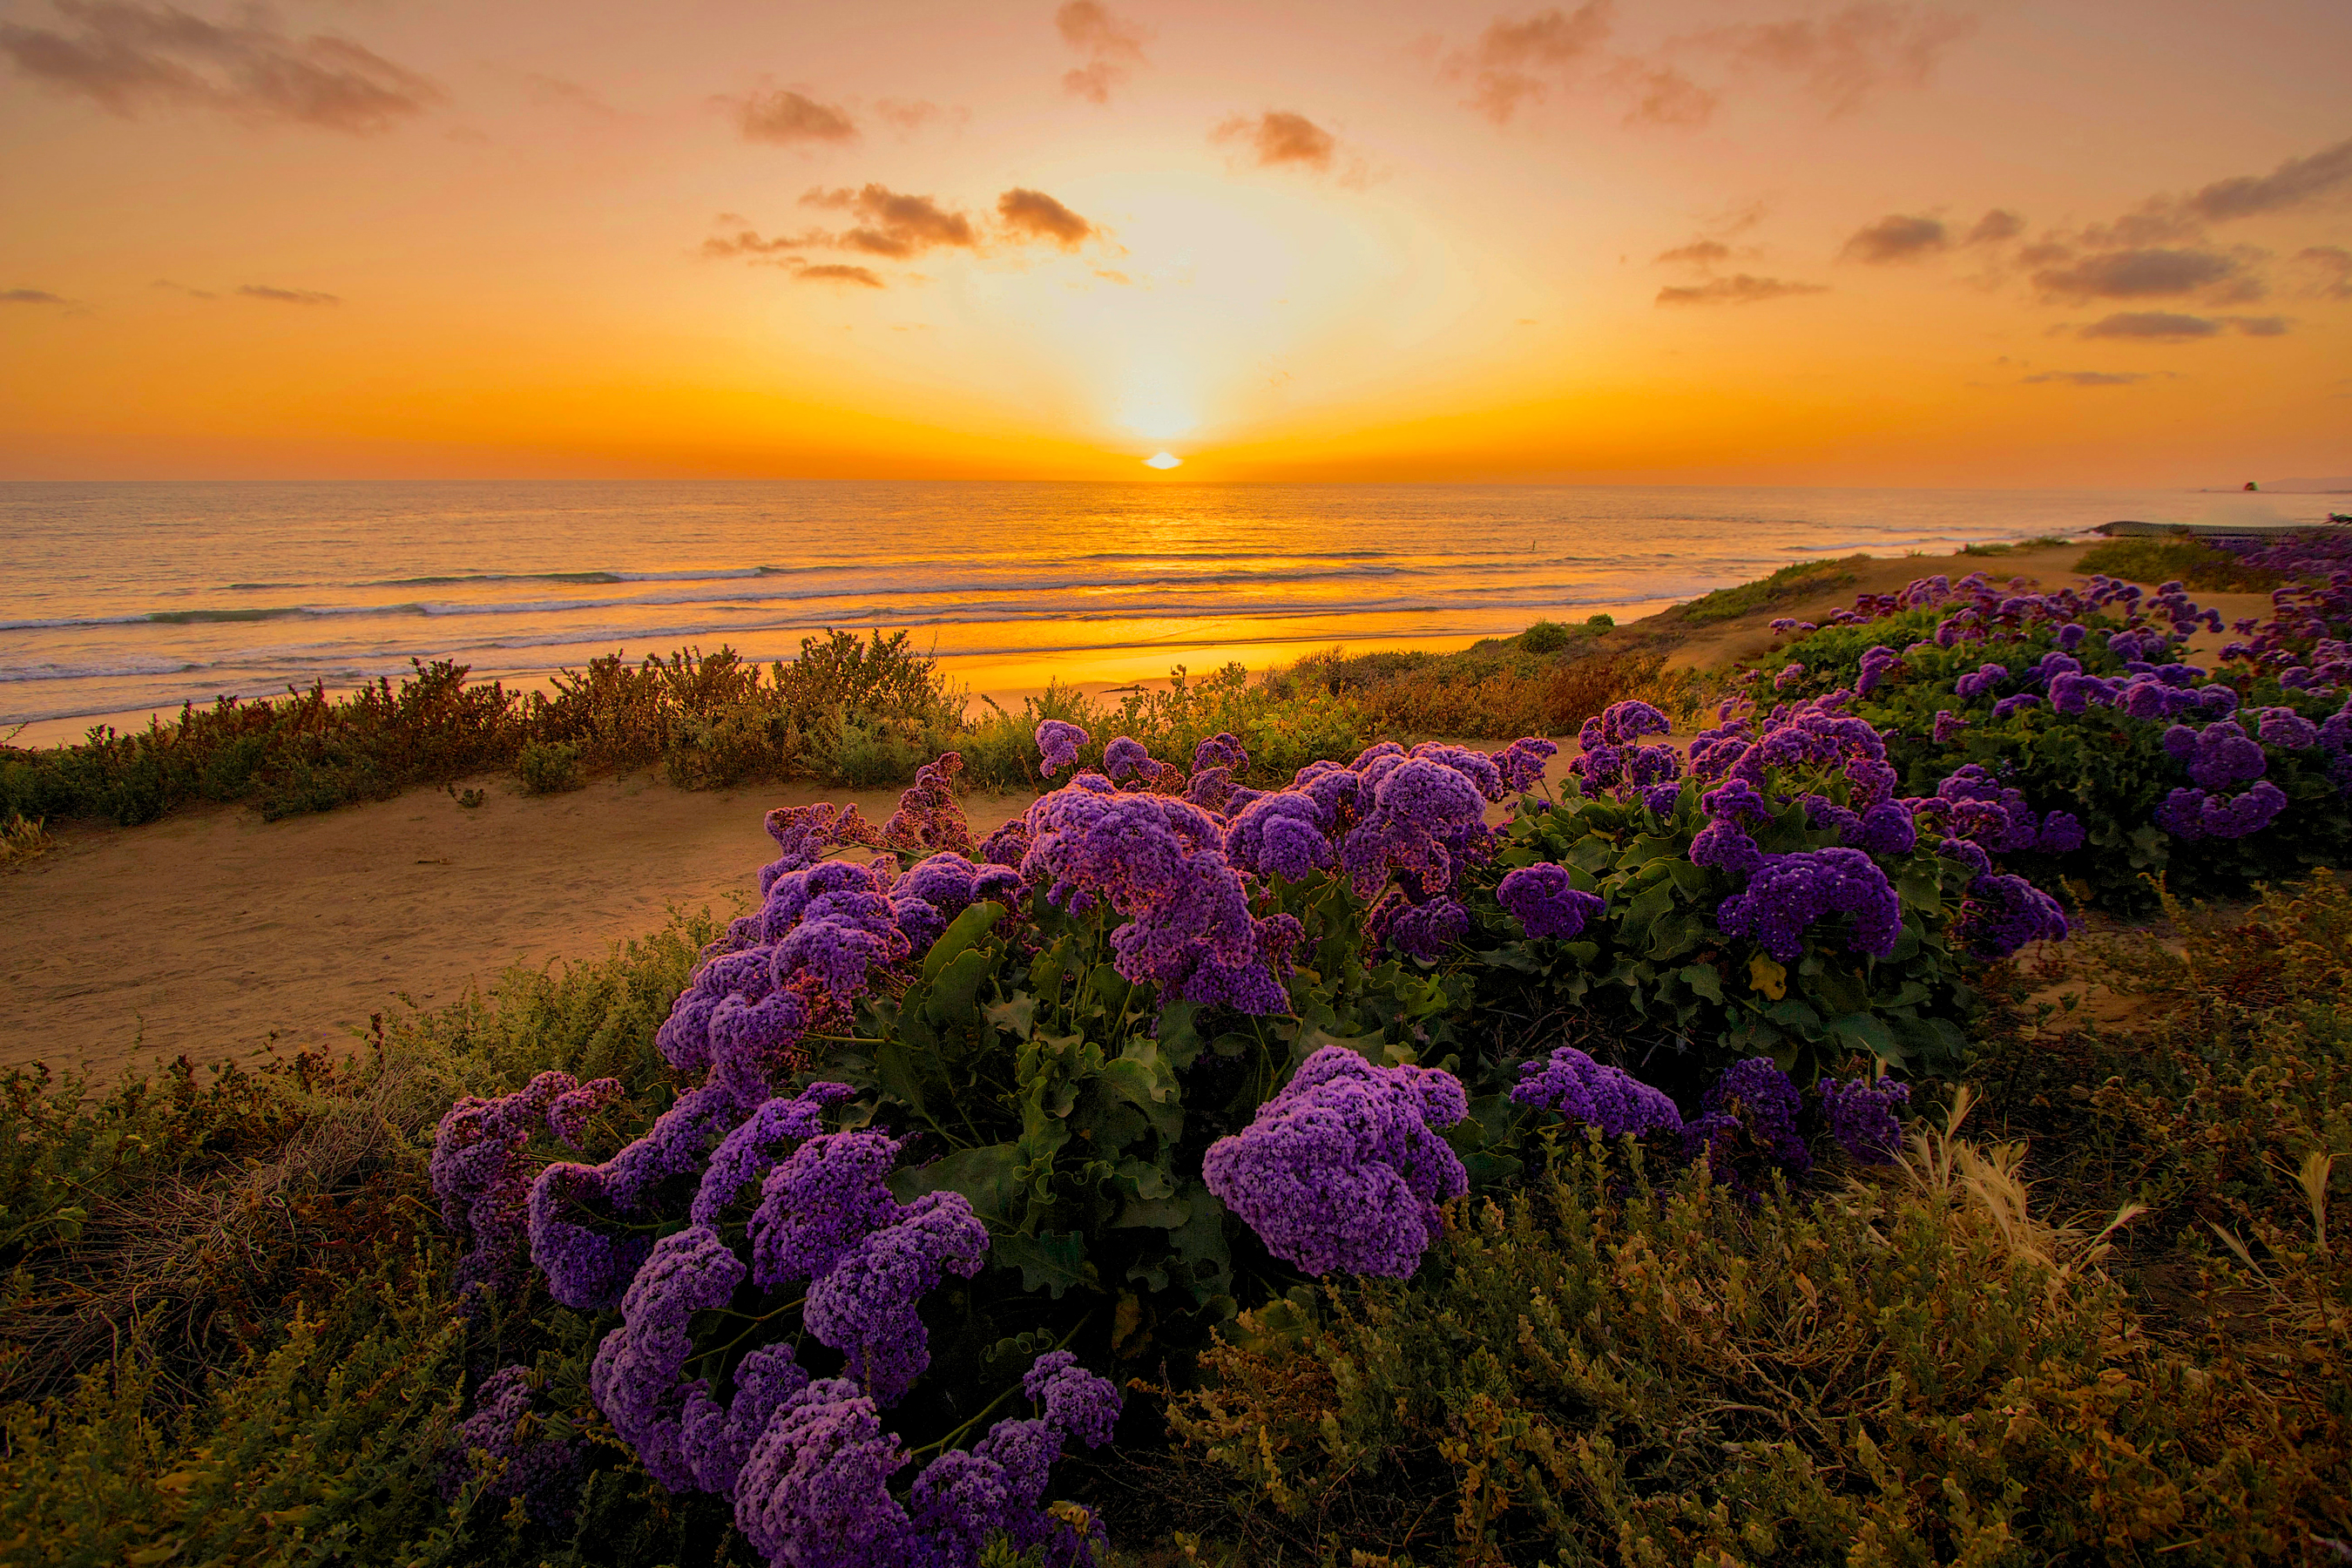 Flower sunset. Калифорния тихий океан. Сиреневое море. Рассвет на море. Пейзаж в фиолетовых тонах.